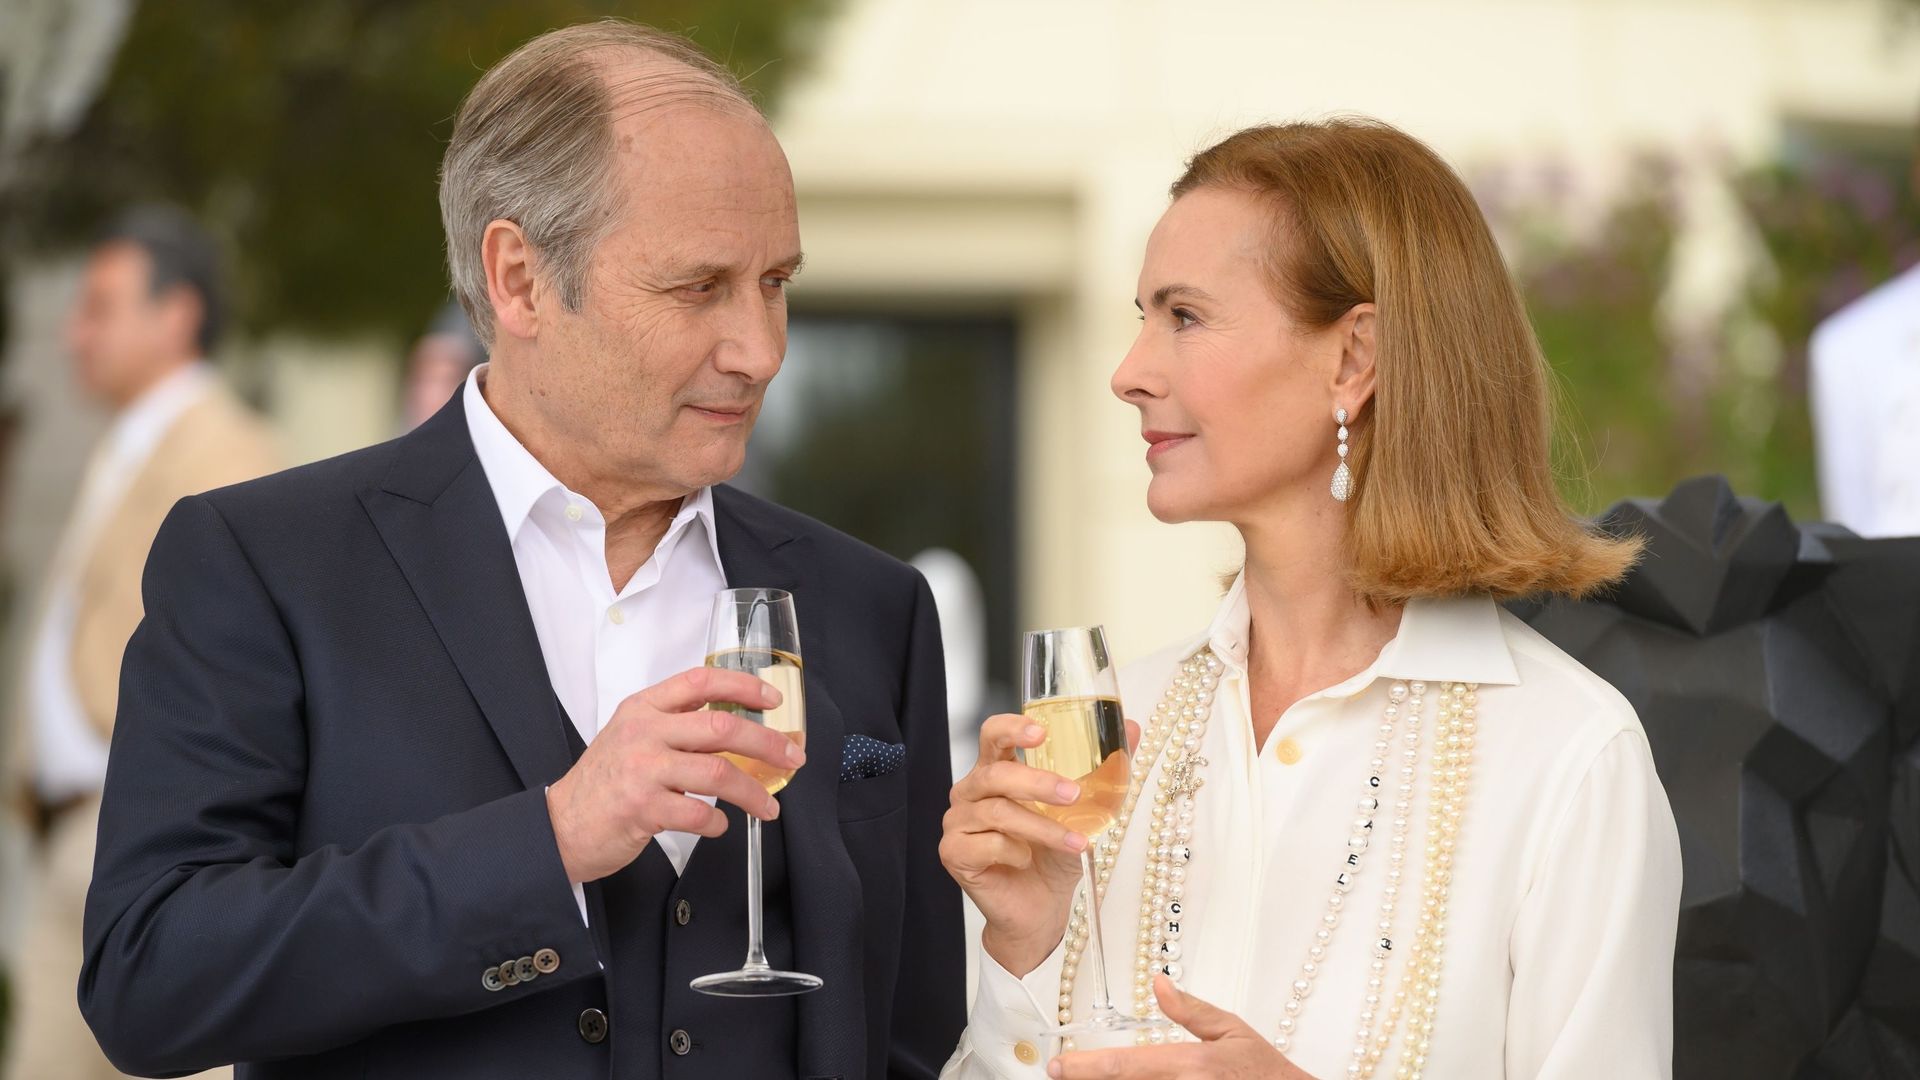 Des décors somptueux et de très bons comédiens, Carole Bouquet se confie sur la série "Grand Hôtel"